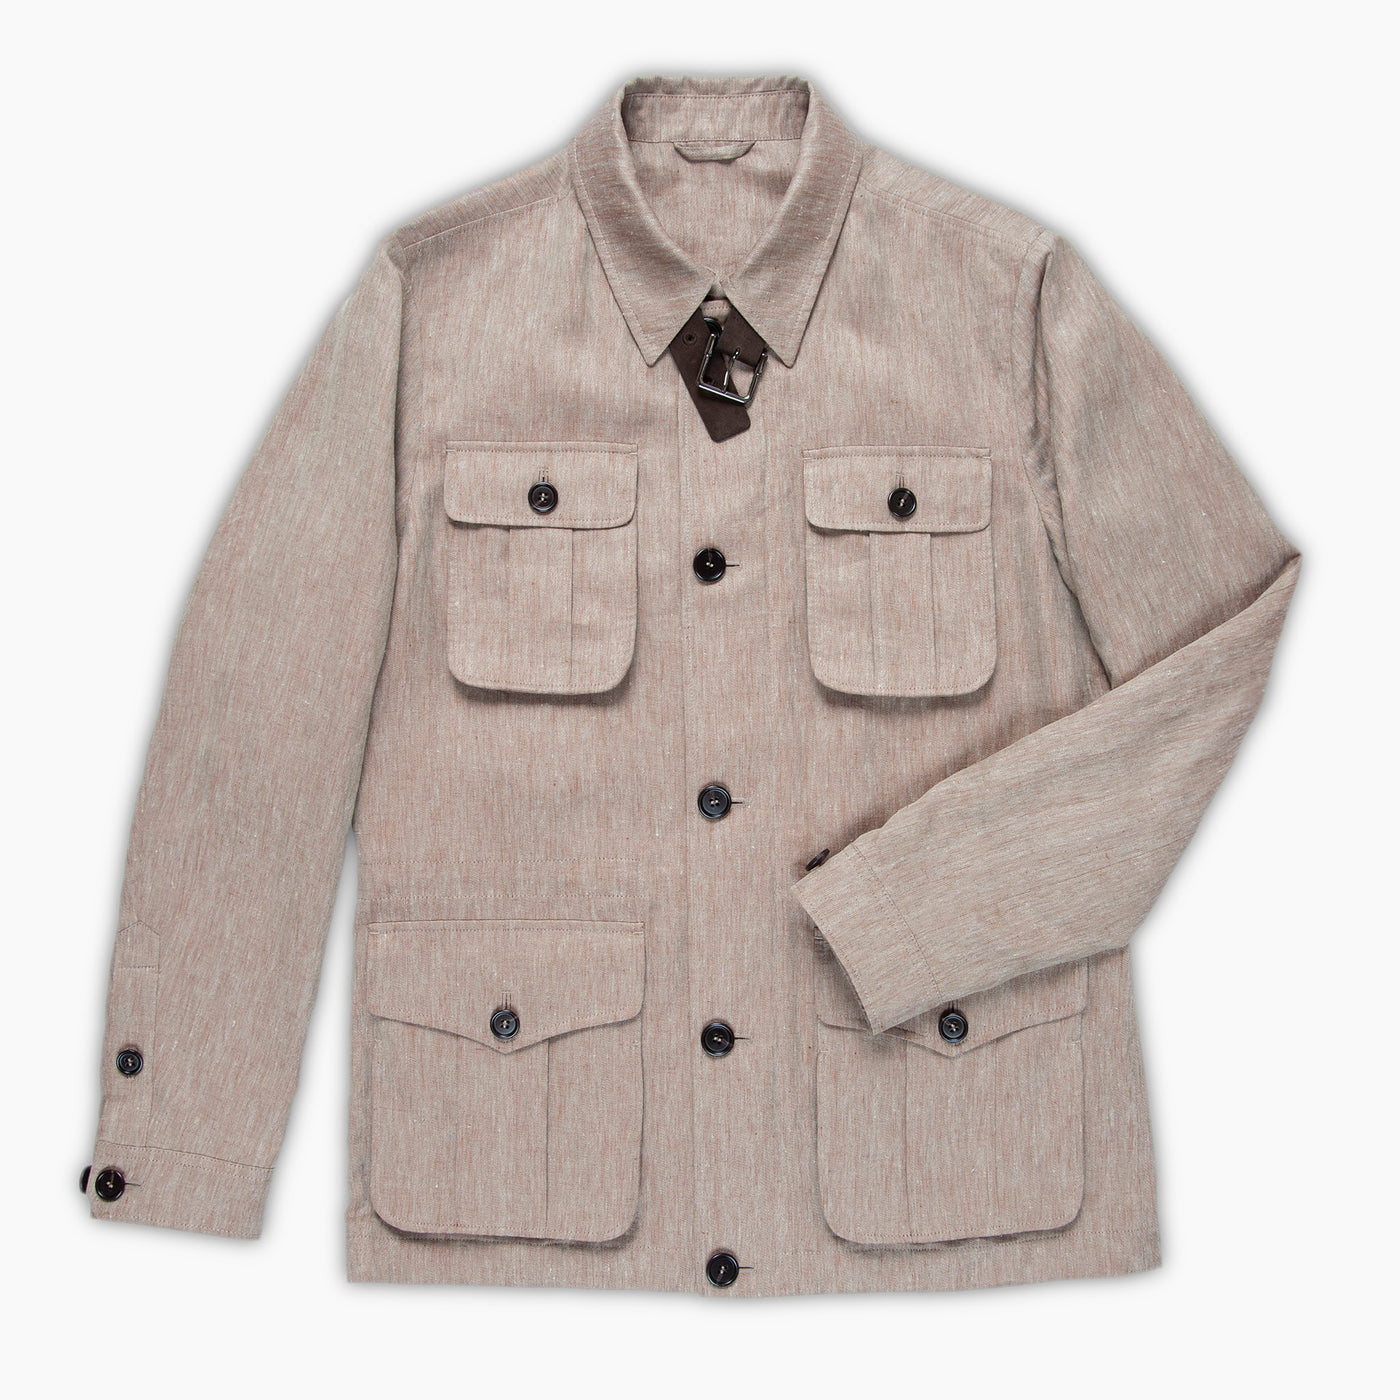 Evrad Safari jacket in Portofino linen and silk